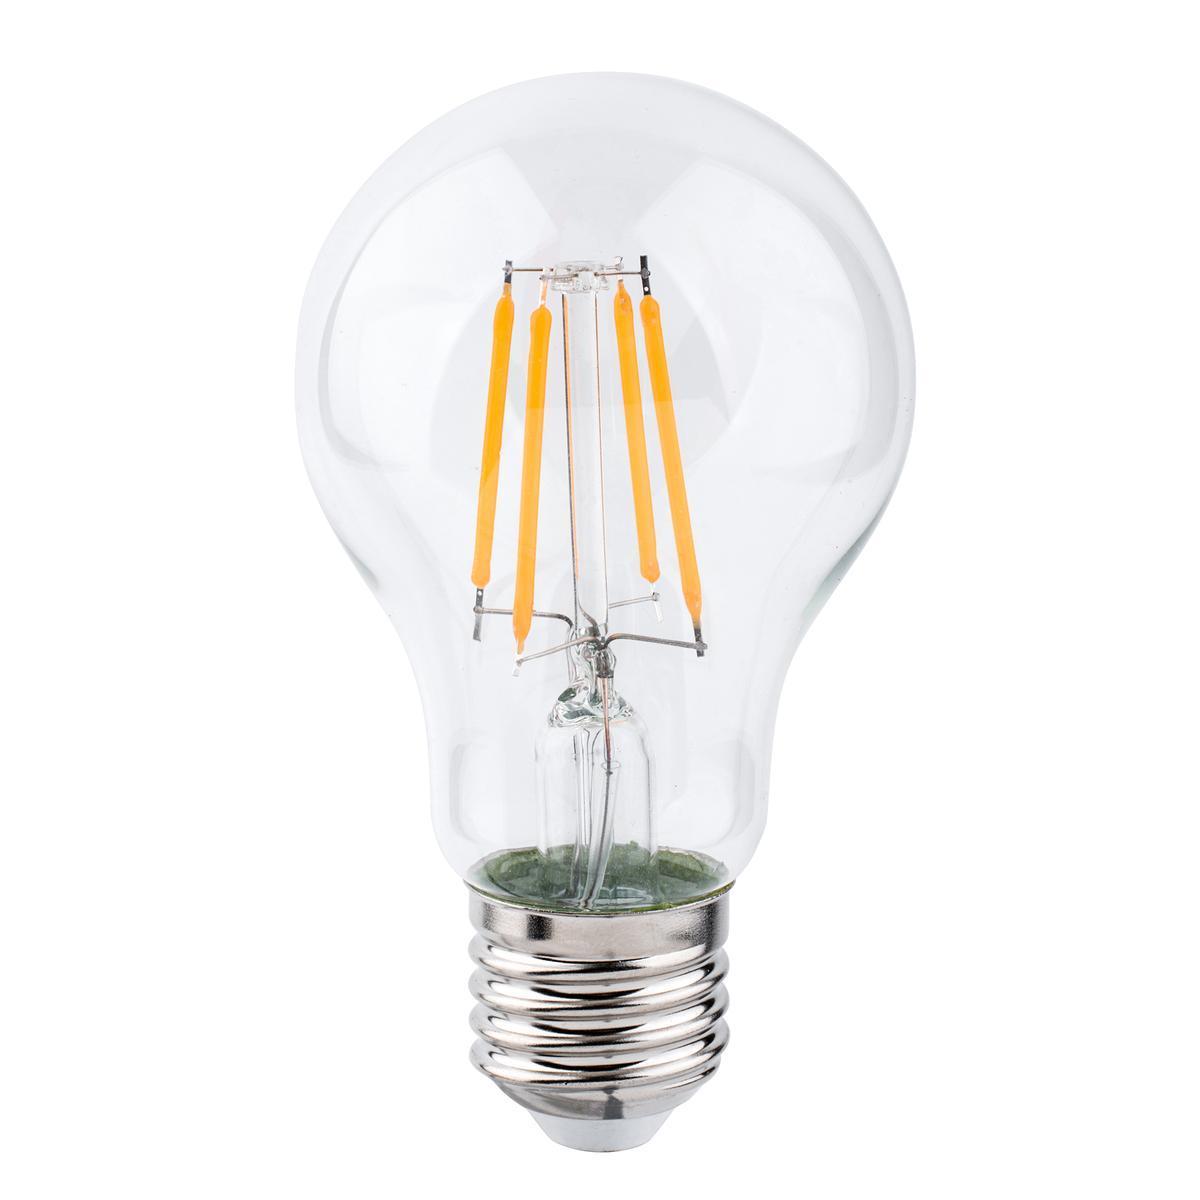 Ampoule à filaments LED A60 E27 - 800 LM - Transparent, blanc chaud